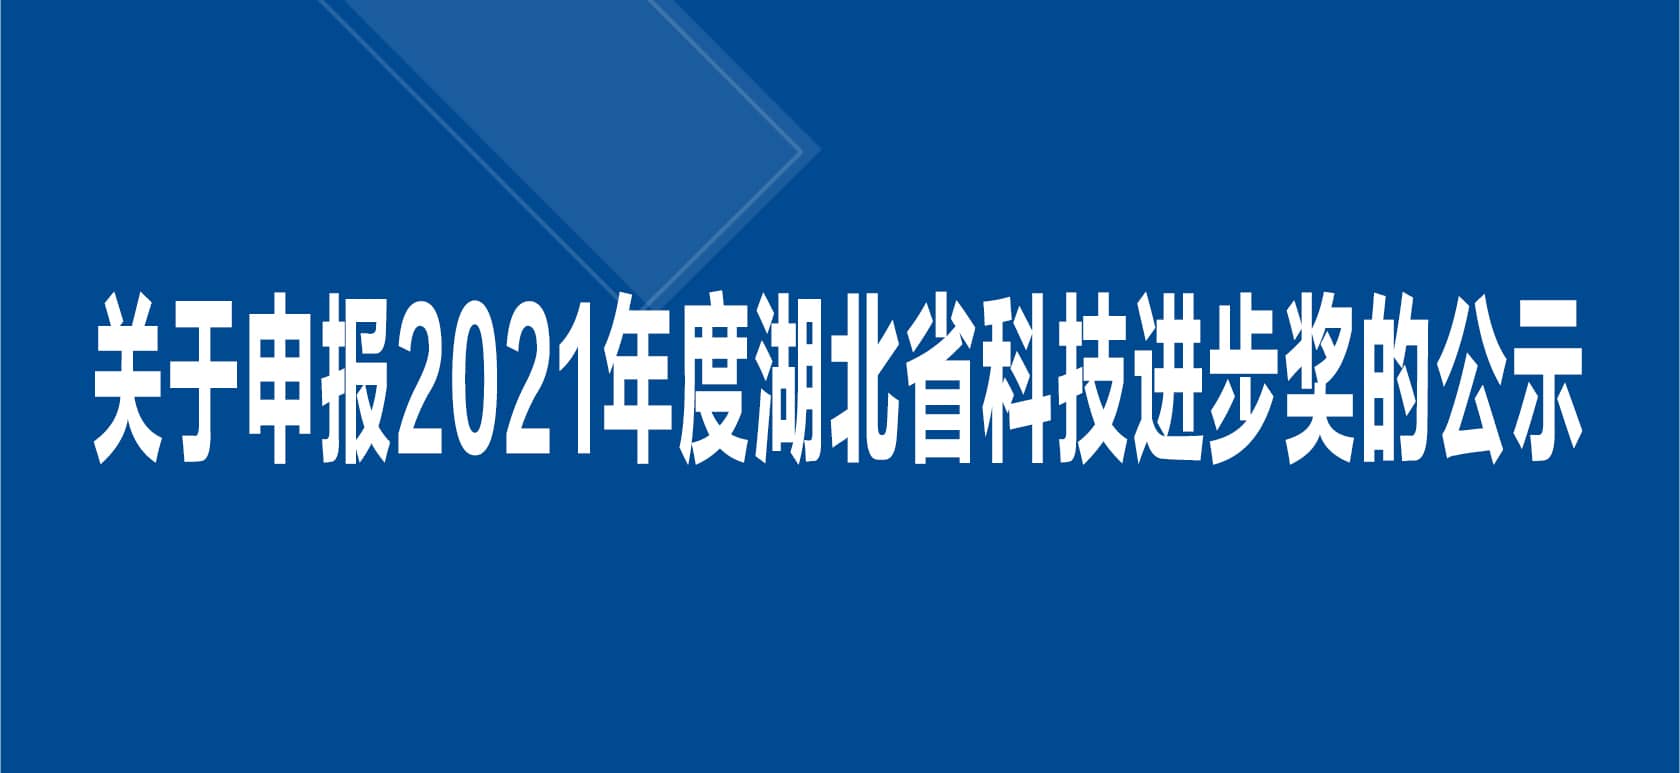 关于申报2021 年度湖北省科技进步奖的公示